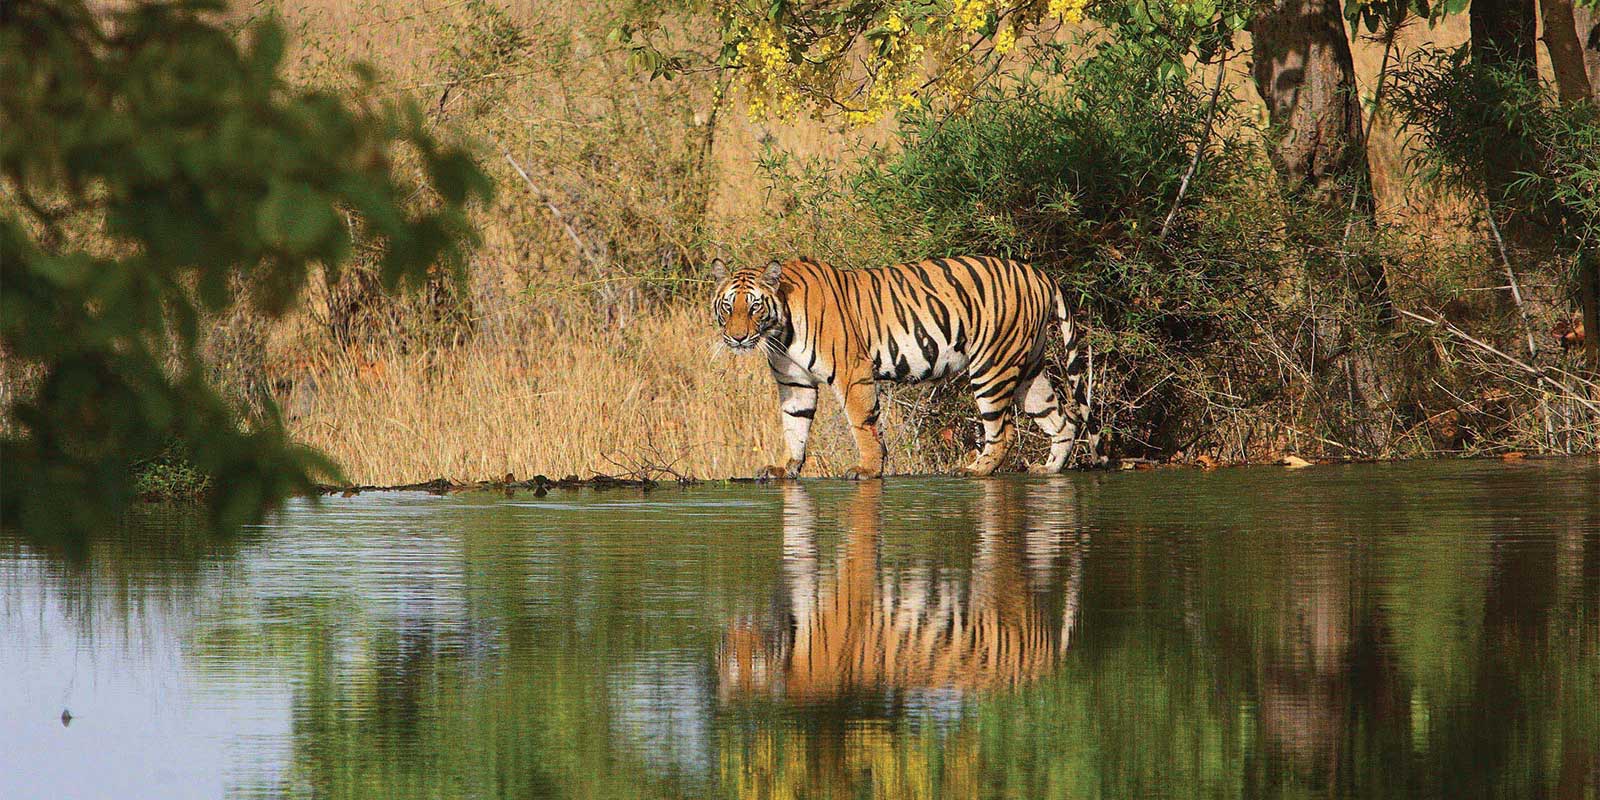 Tiger in Bandhavgarh National Park, India